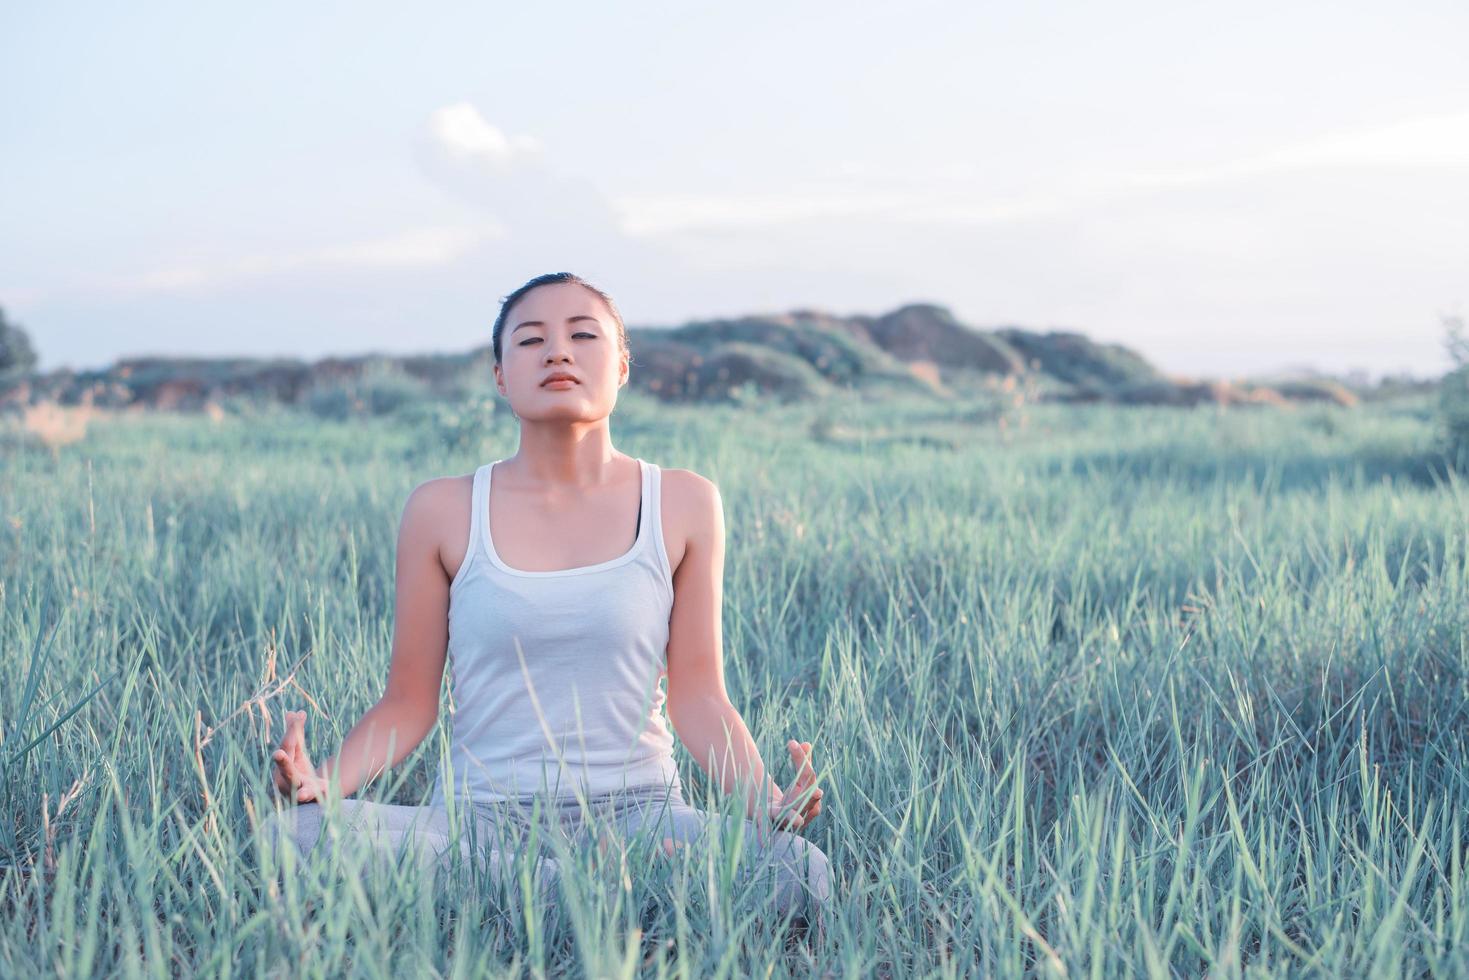 mulher de ioga na postura de lótus em um prado ensolarado foto